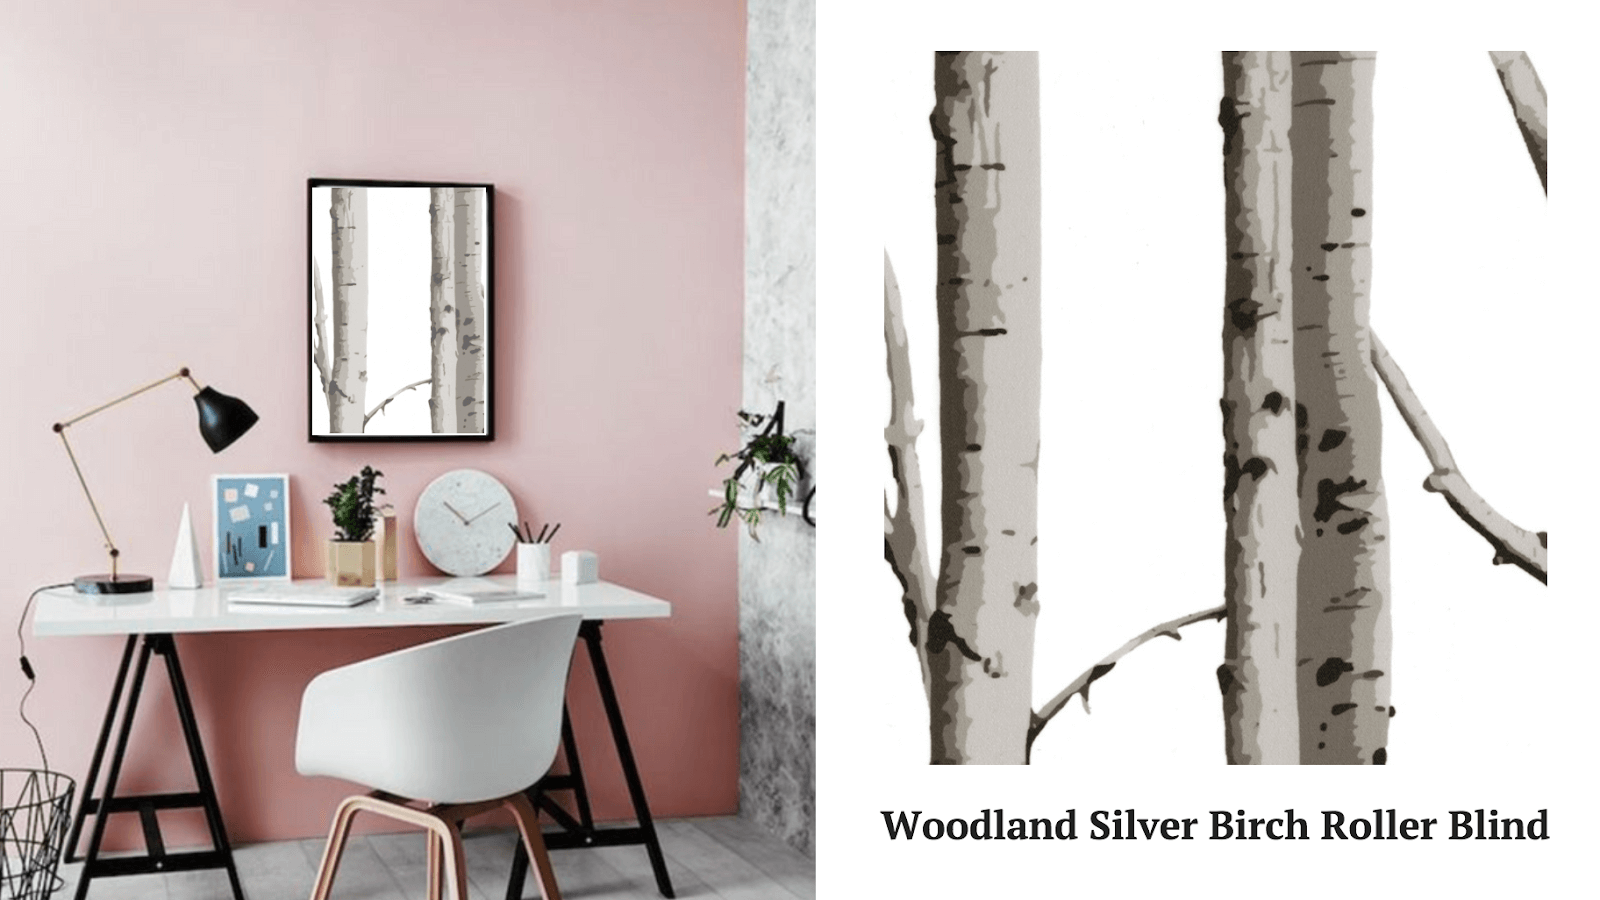 Woodland Silver Birch Roller Blind